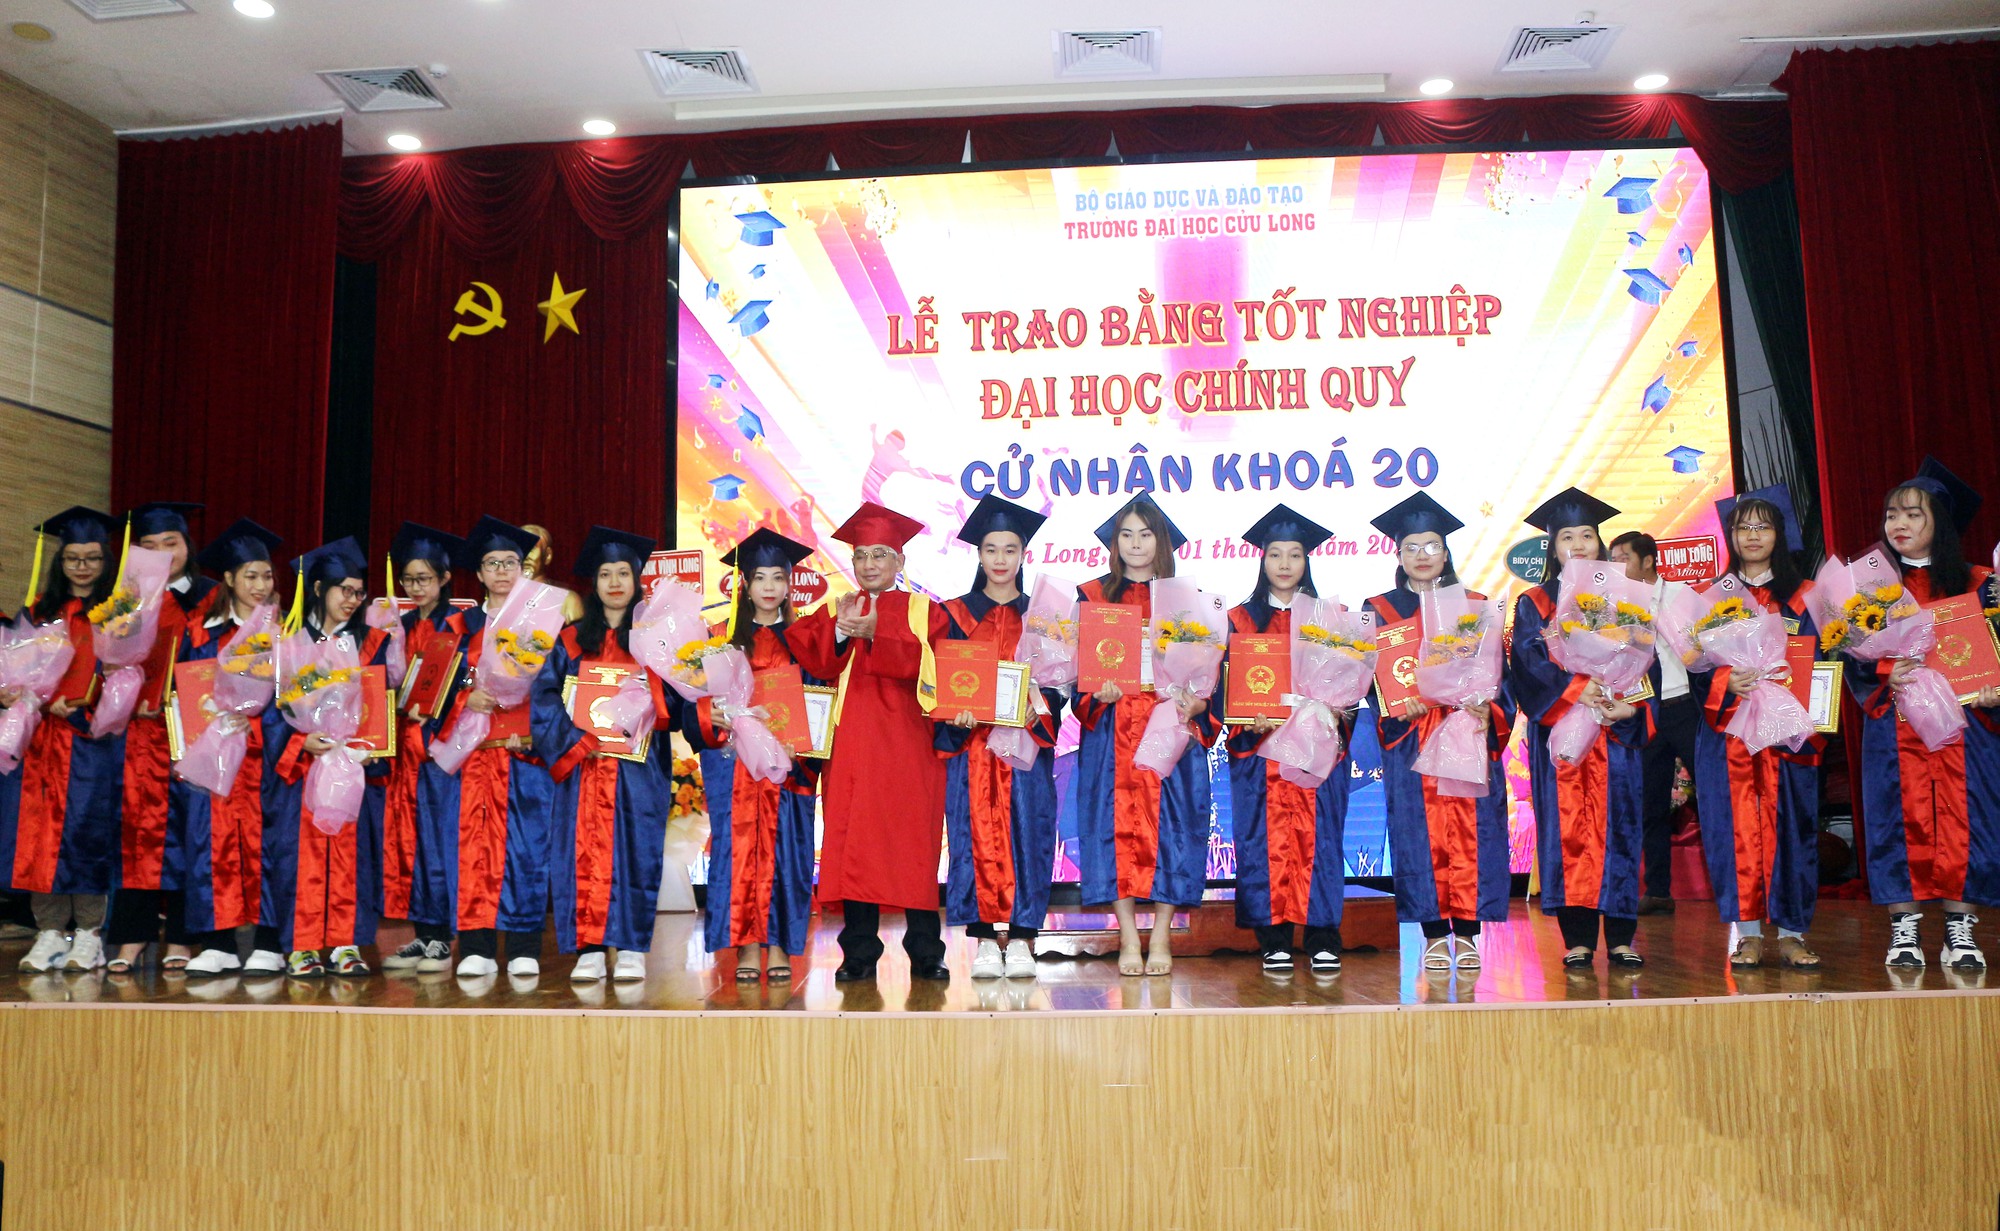 Trường ĐH Cửu Long trao bằng tốt nghiệp cho gần 300 tân cử nhân - Ảnh 4.